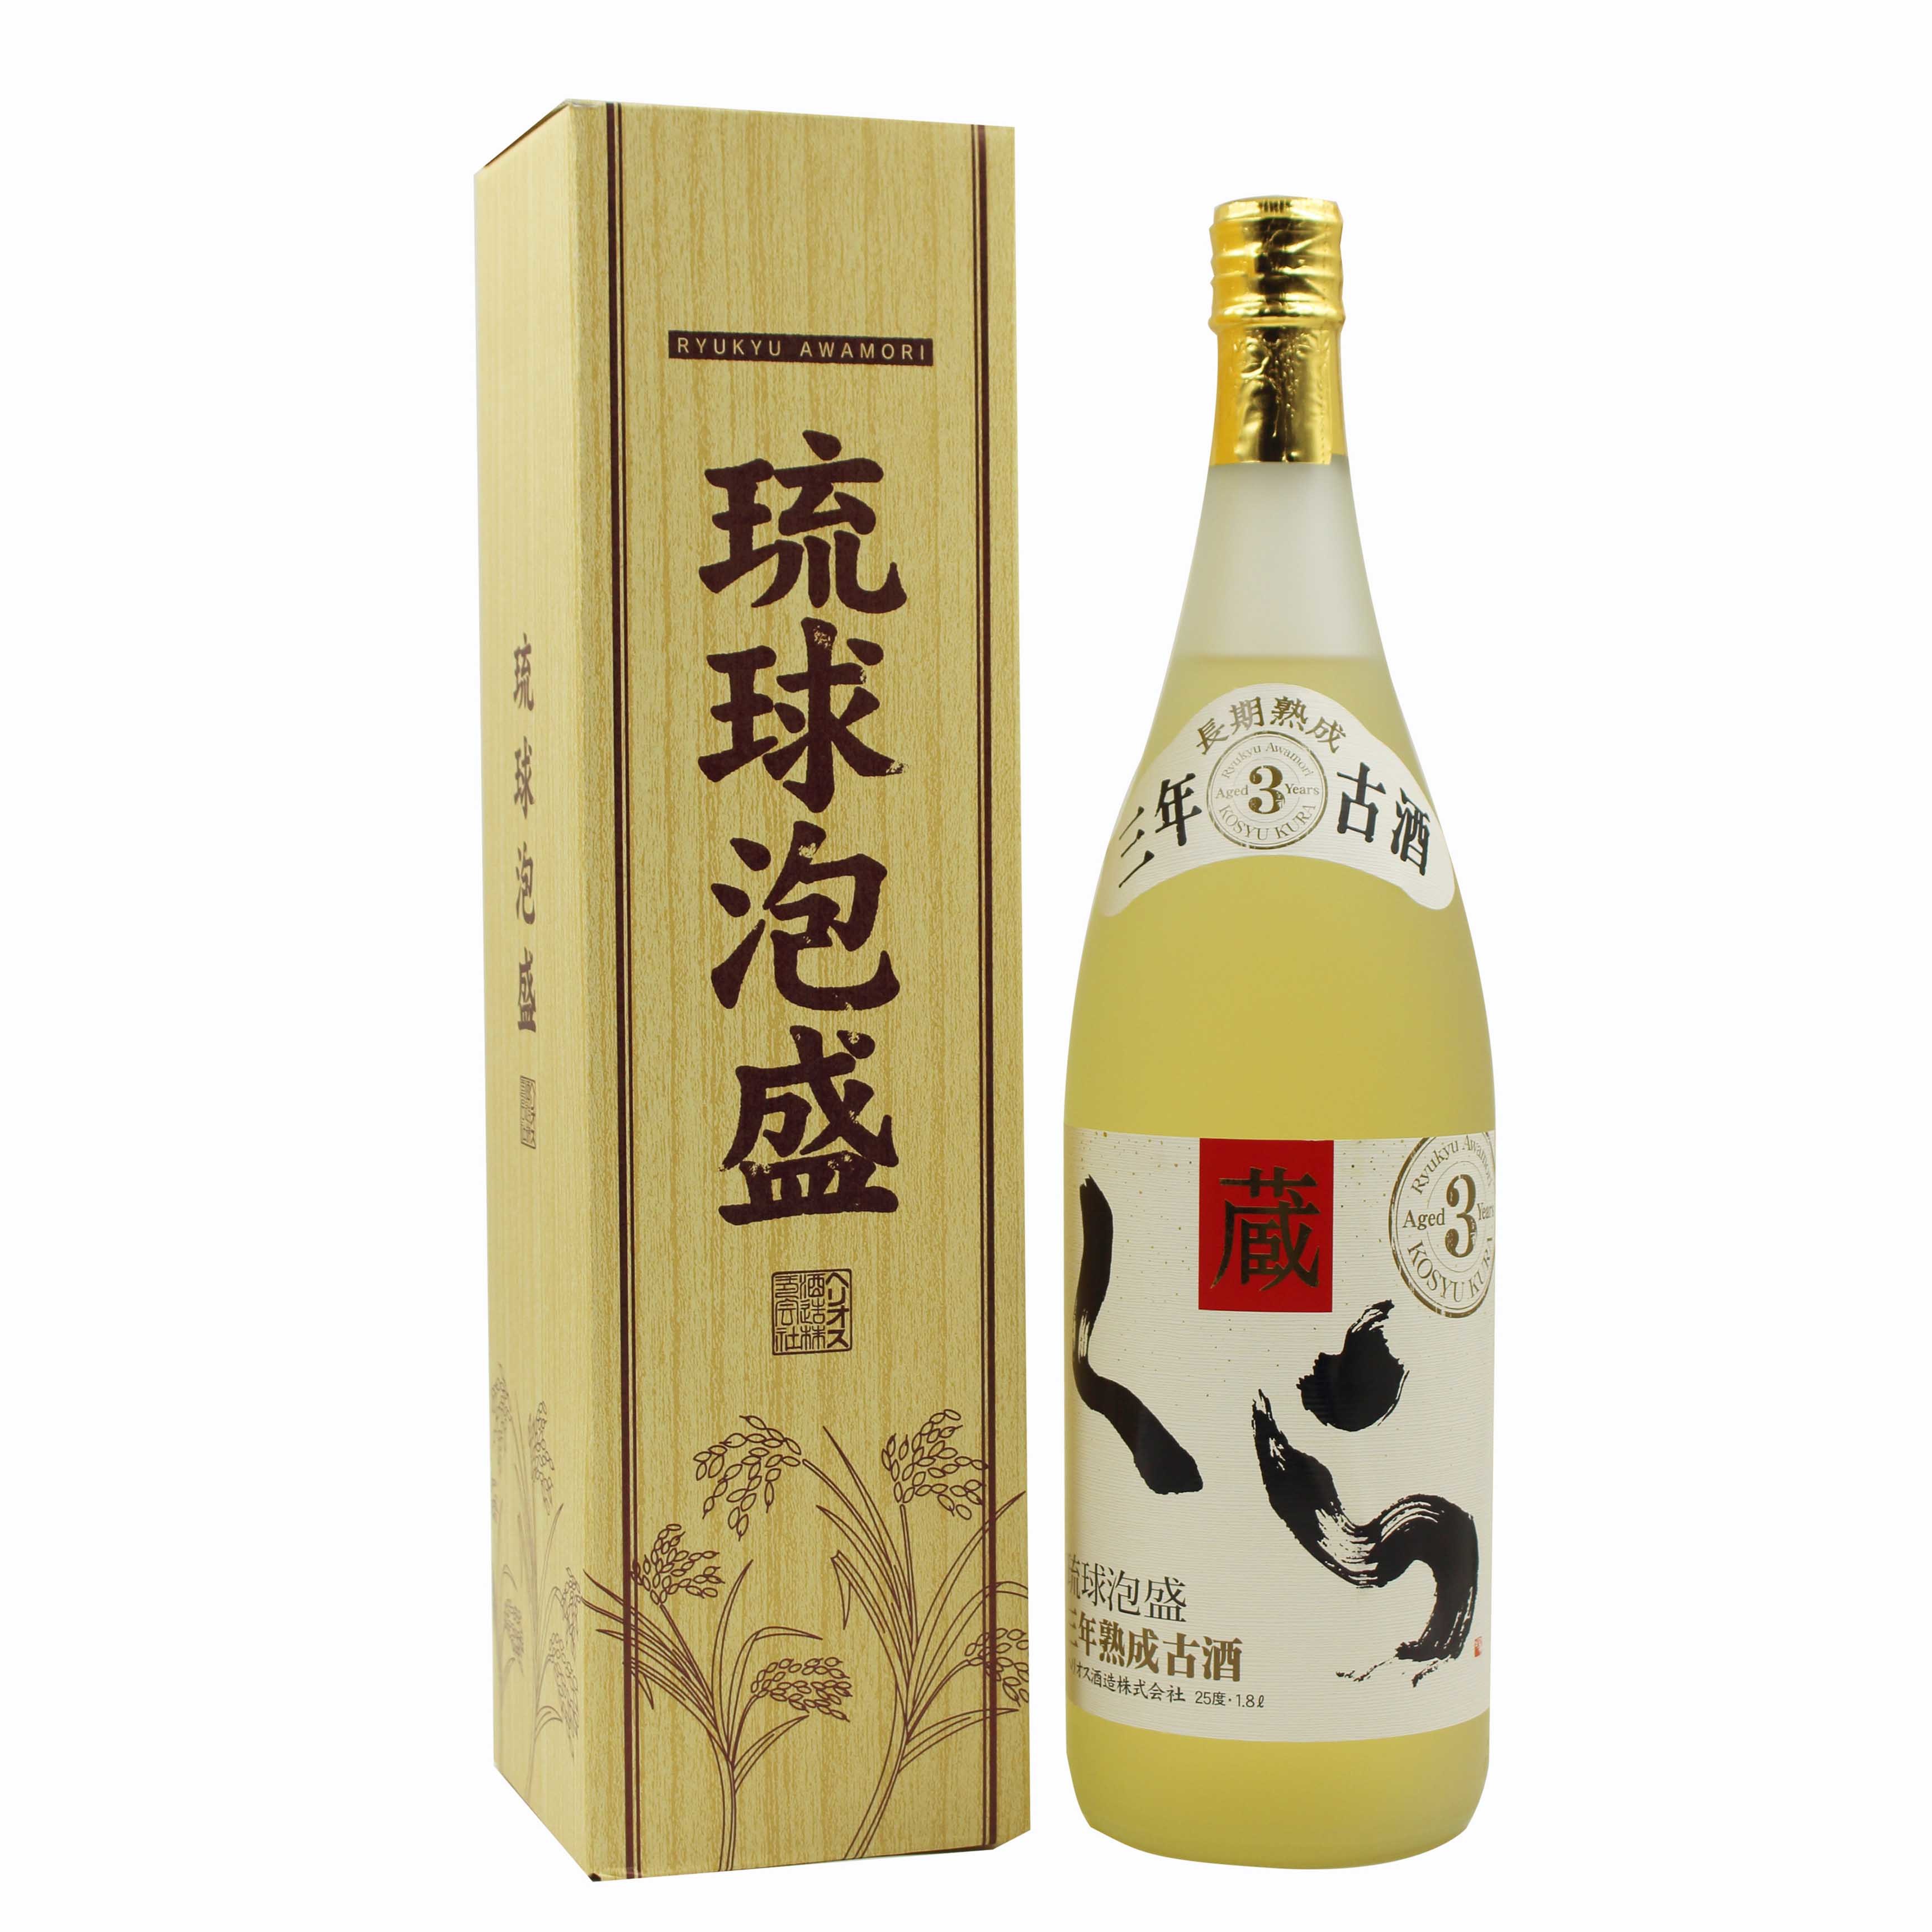 10029 蔵 米烧酒1.8L